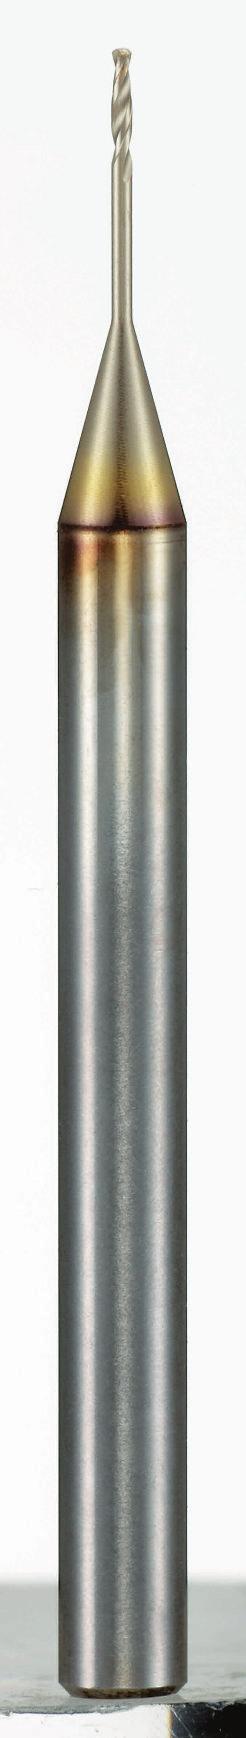 Von 2,0 bis 2,0 mm in 1 Größen ab Lager lieferbar. TiCN MicroMehrschichtBeschichtung Hochwertiger pulvermetallurgischer Schneidstoff als Grundmaterial Bohrleistung von SG-ESS Mikro-Bohrern C Ø SUS0(1.